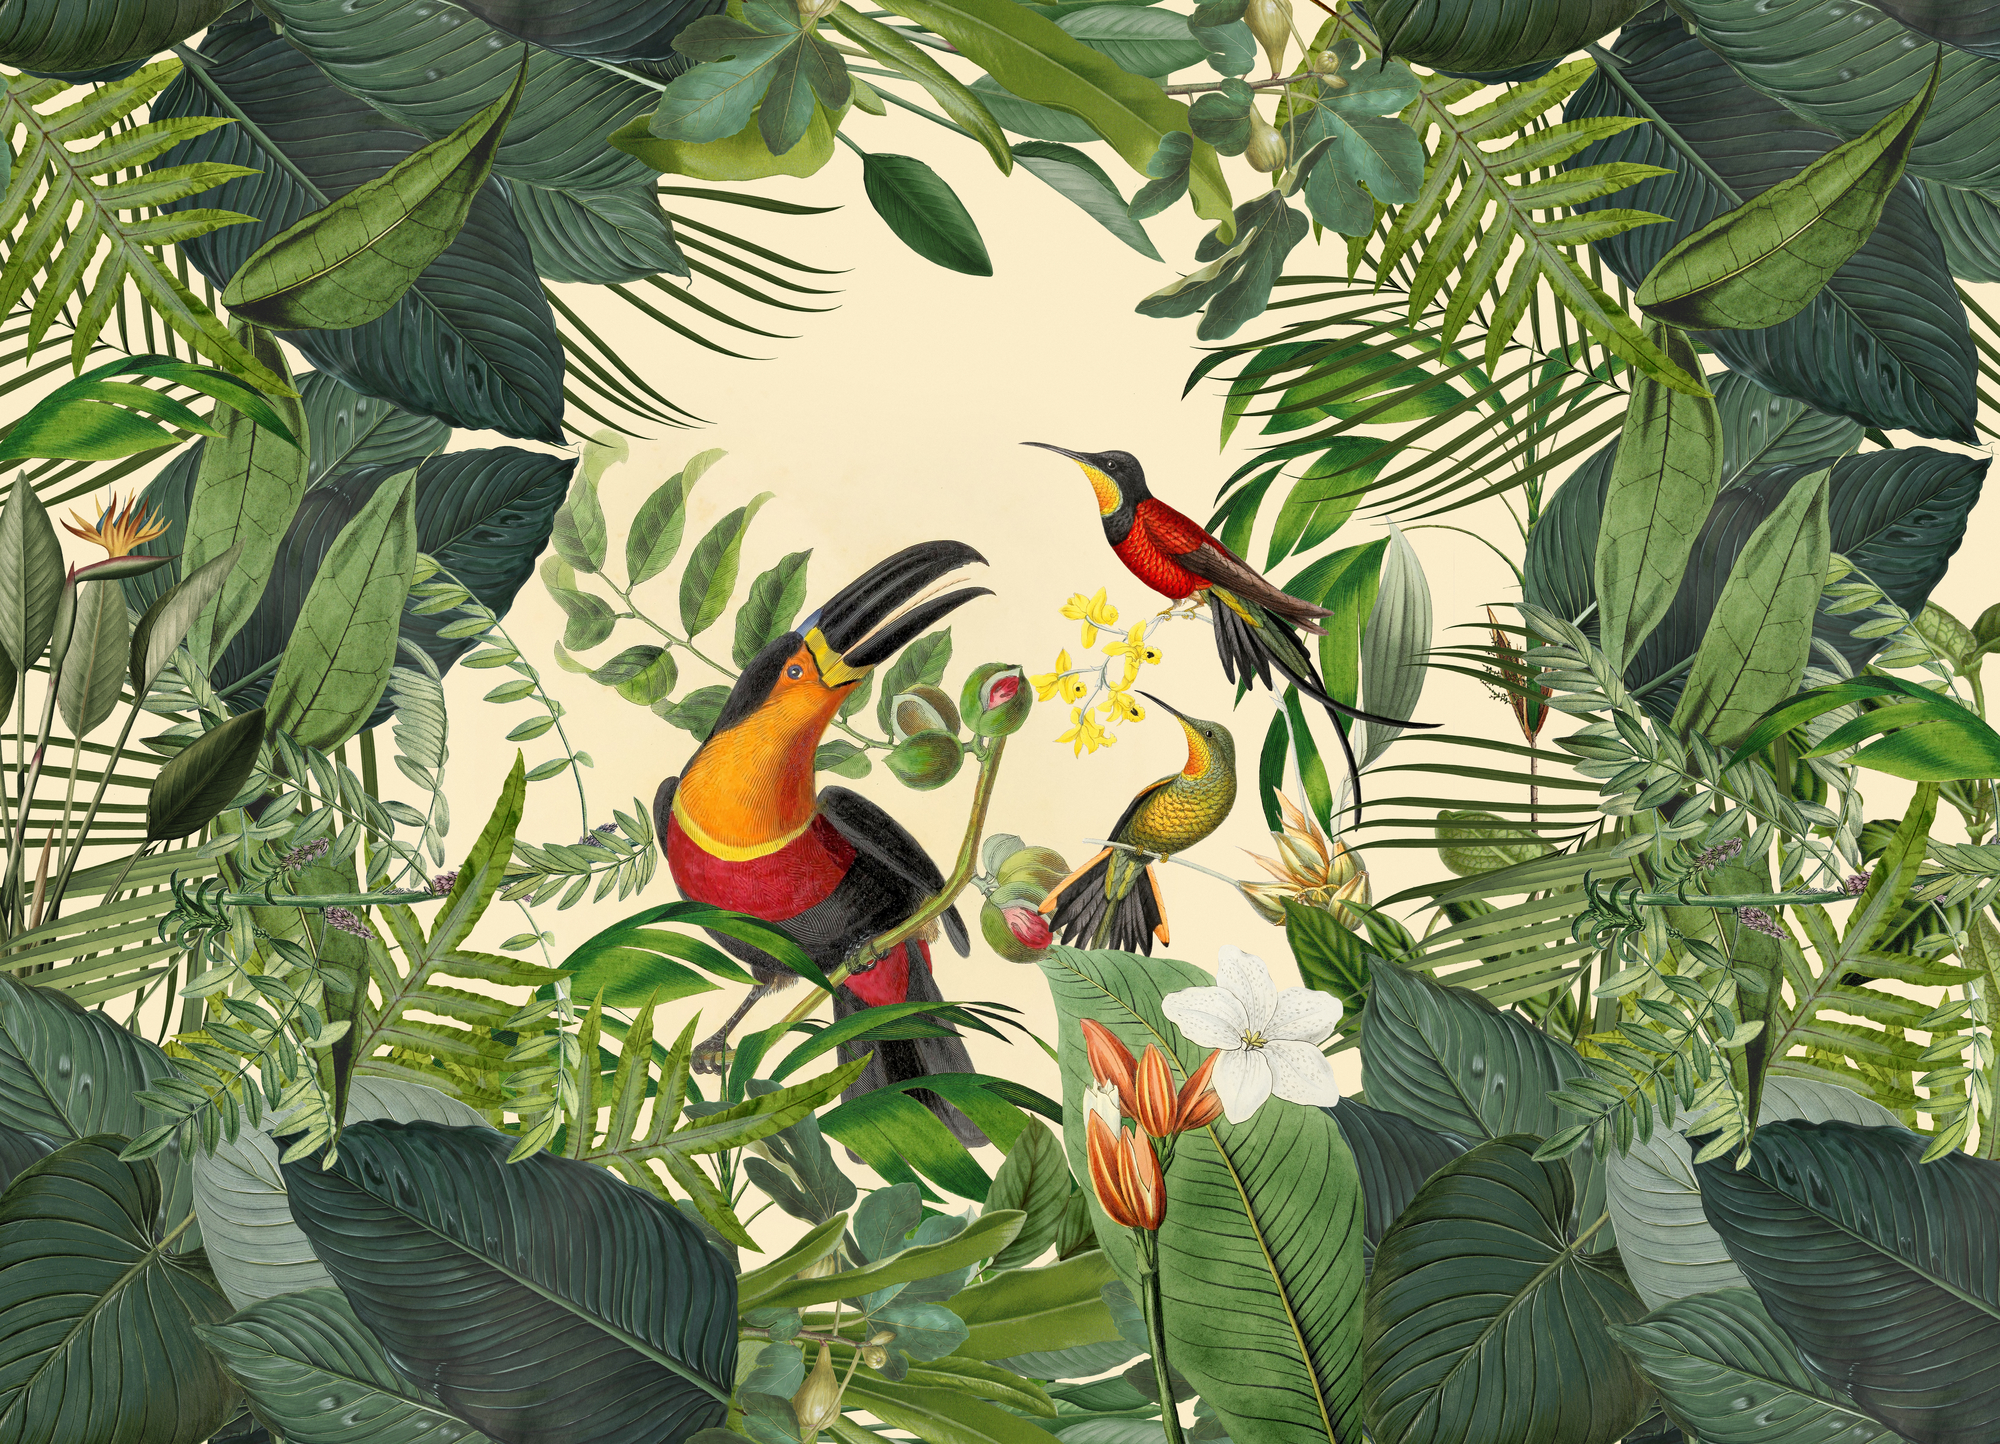 ジャングル壁紙壁画,鳥,工場,花,雨林,アンスリウム